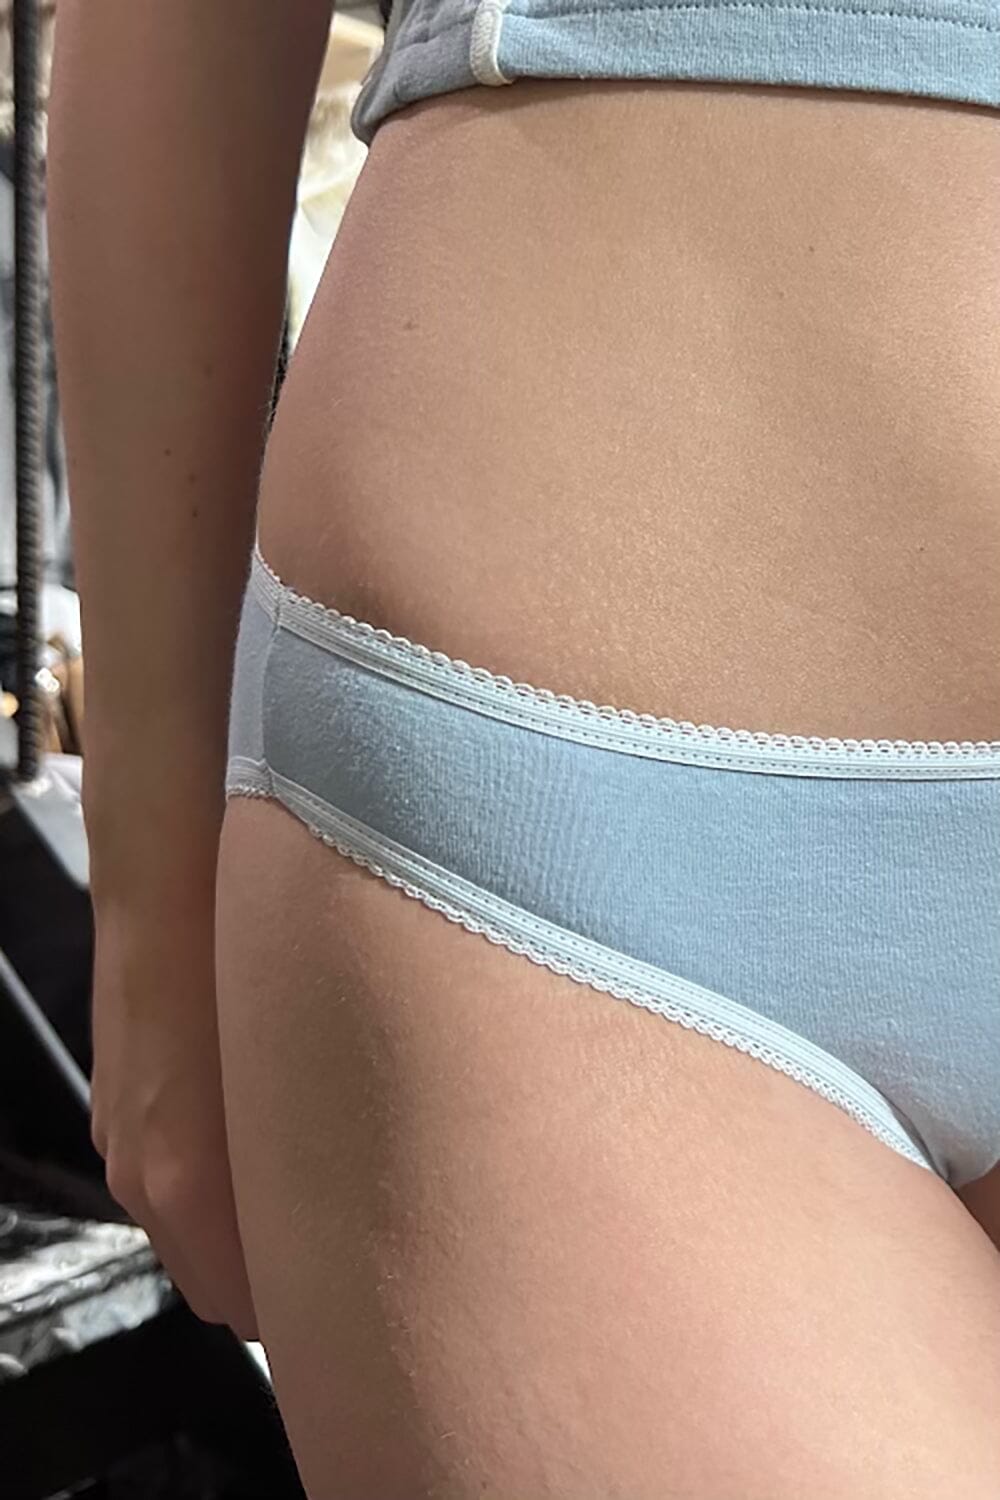 Scalloped Underwear – Brandy Melville